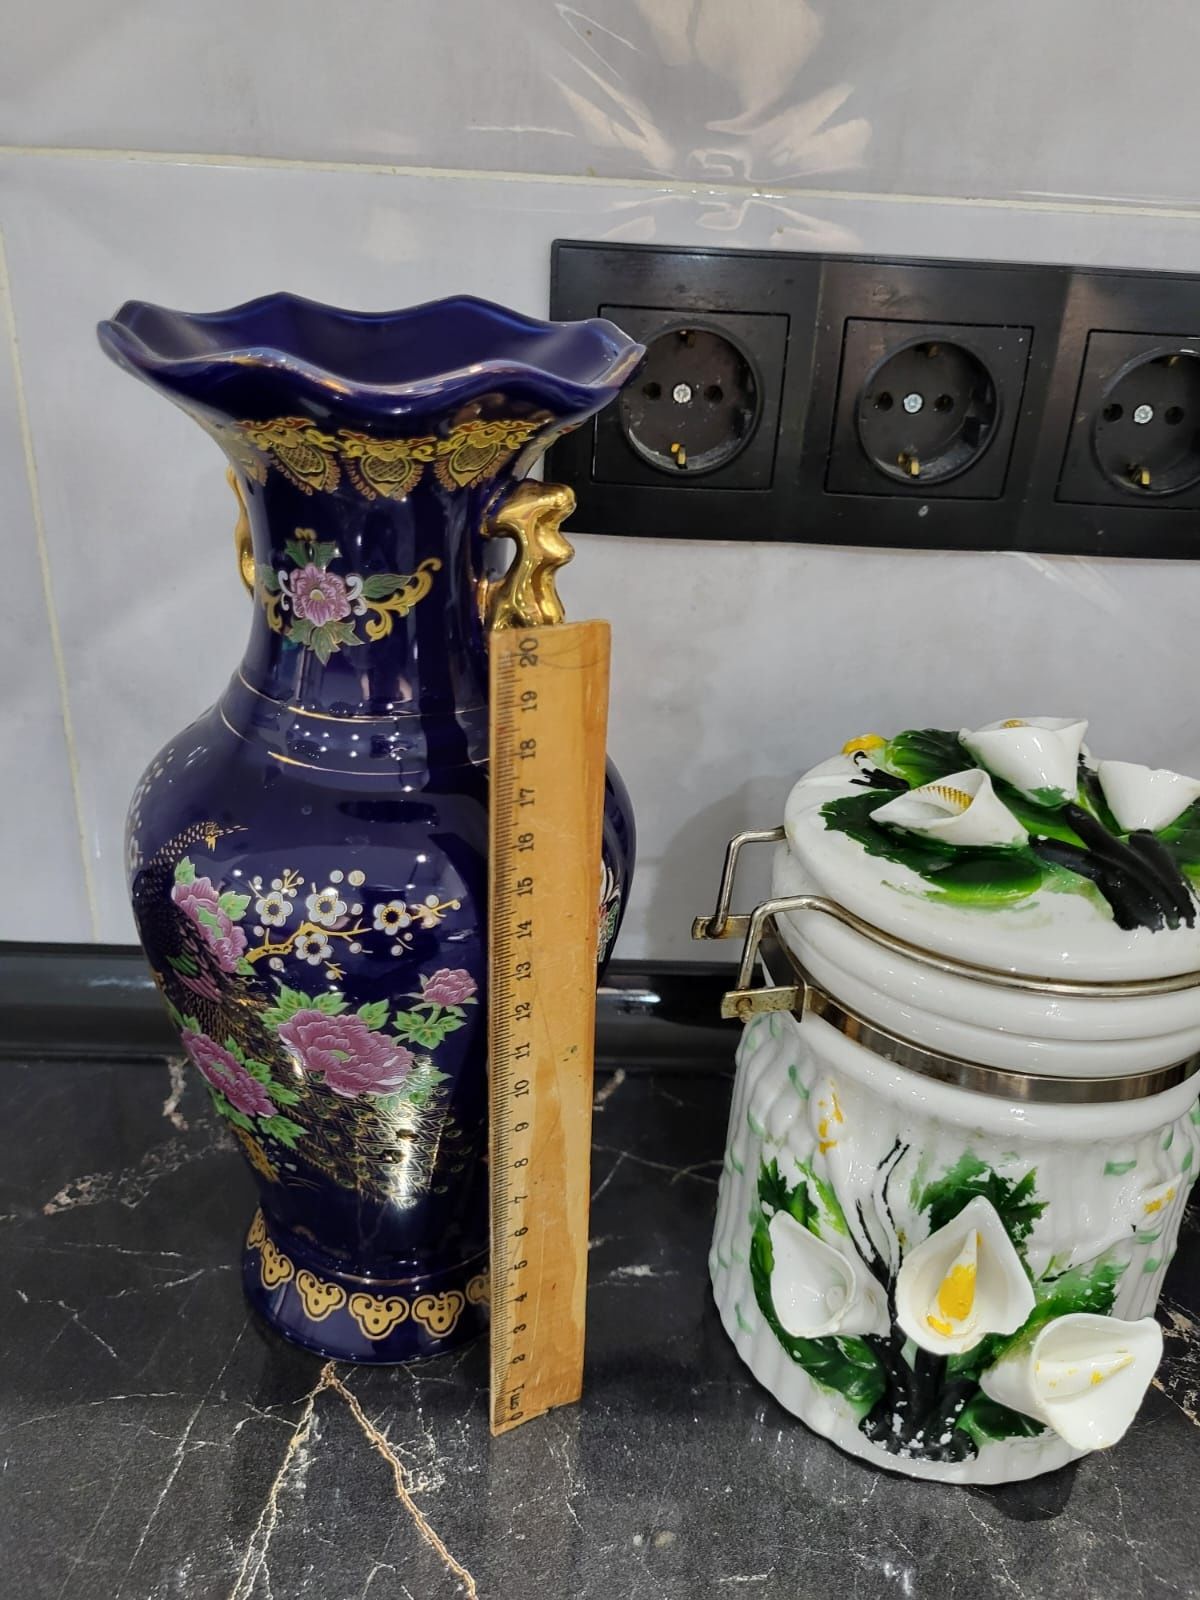 Продам вазу Китай форфор +сахарница  Япония в подарок